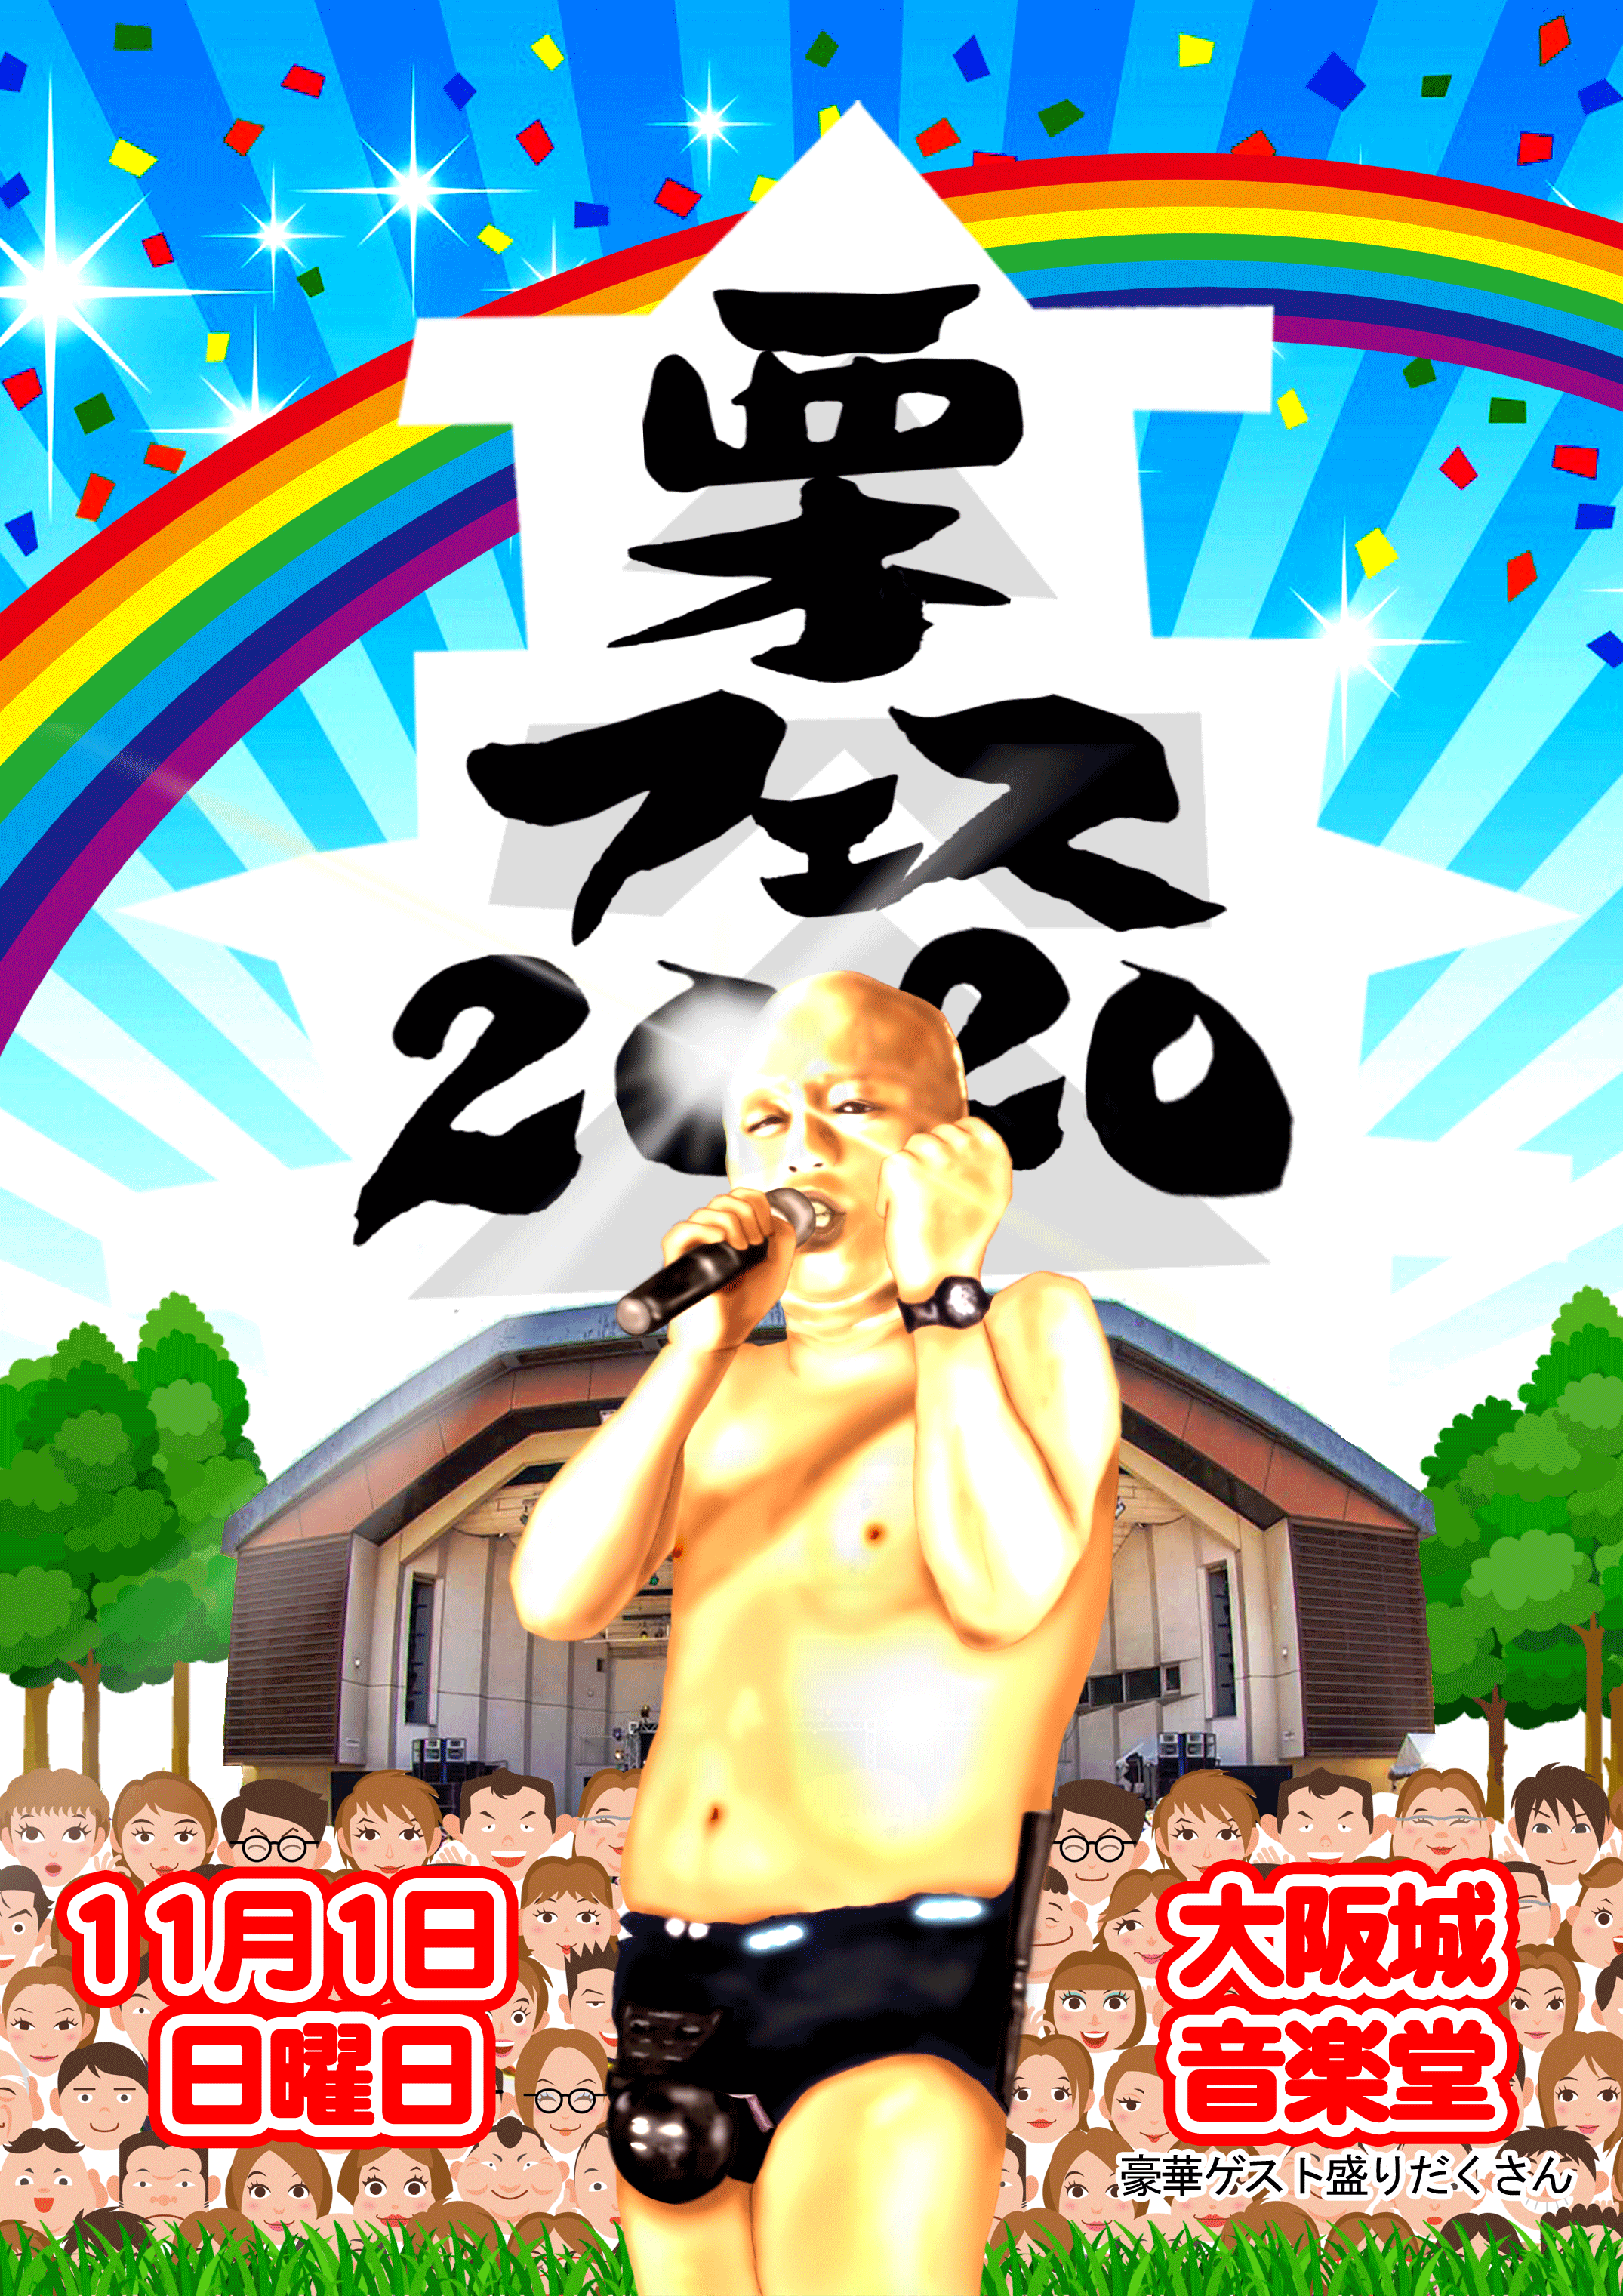 クリトリック・リス「栗フェス2020」最終出演者発表でimai、DJ後藤まりこ、ザ・たこさん